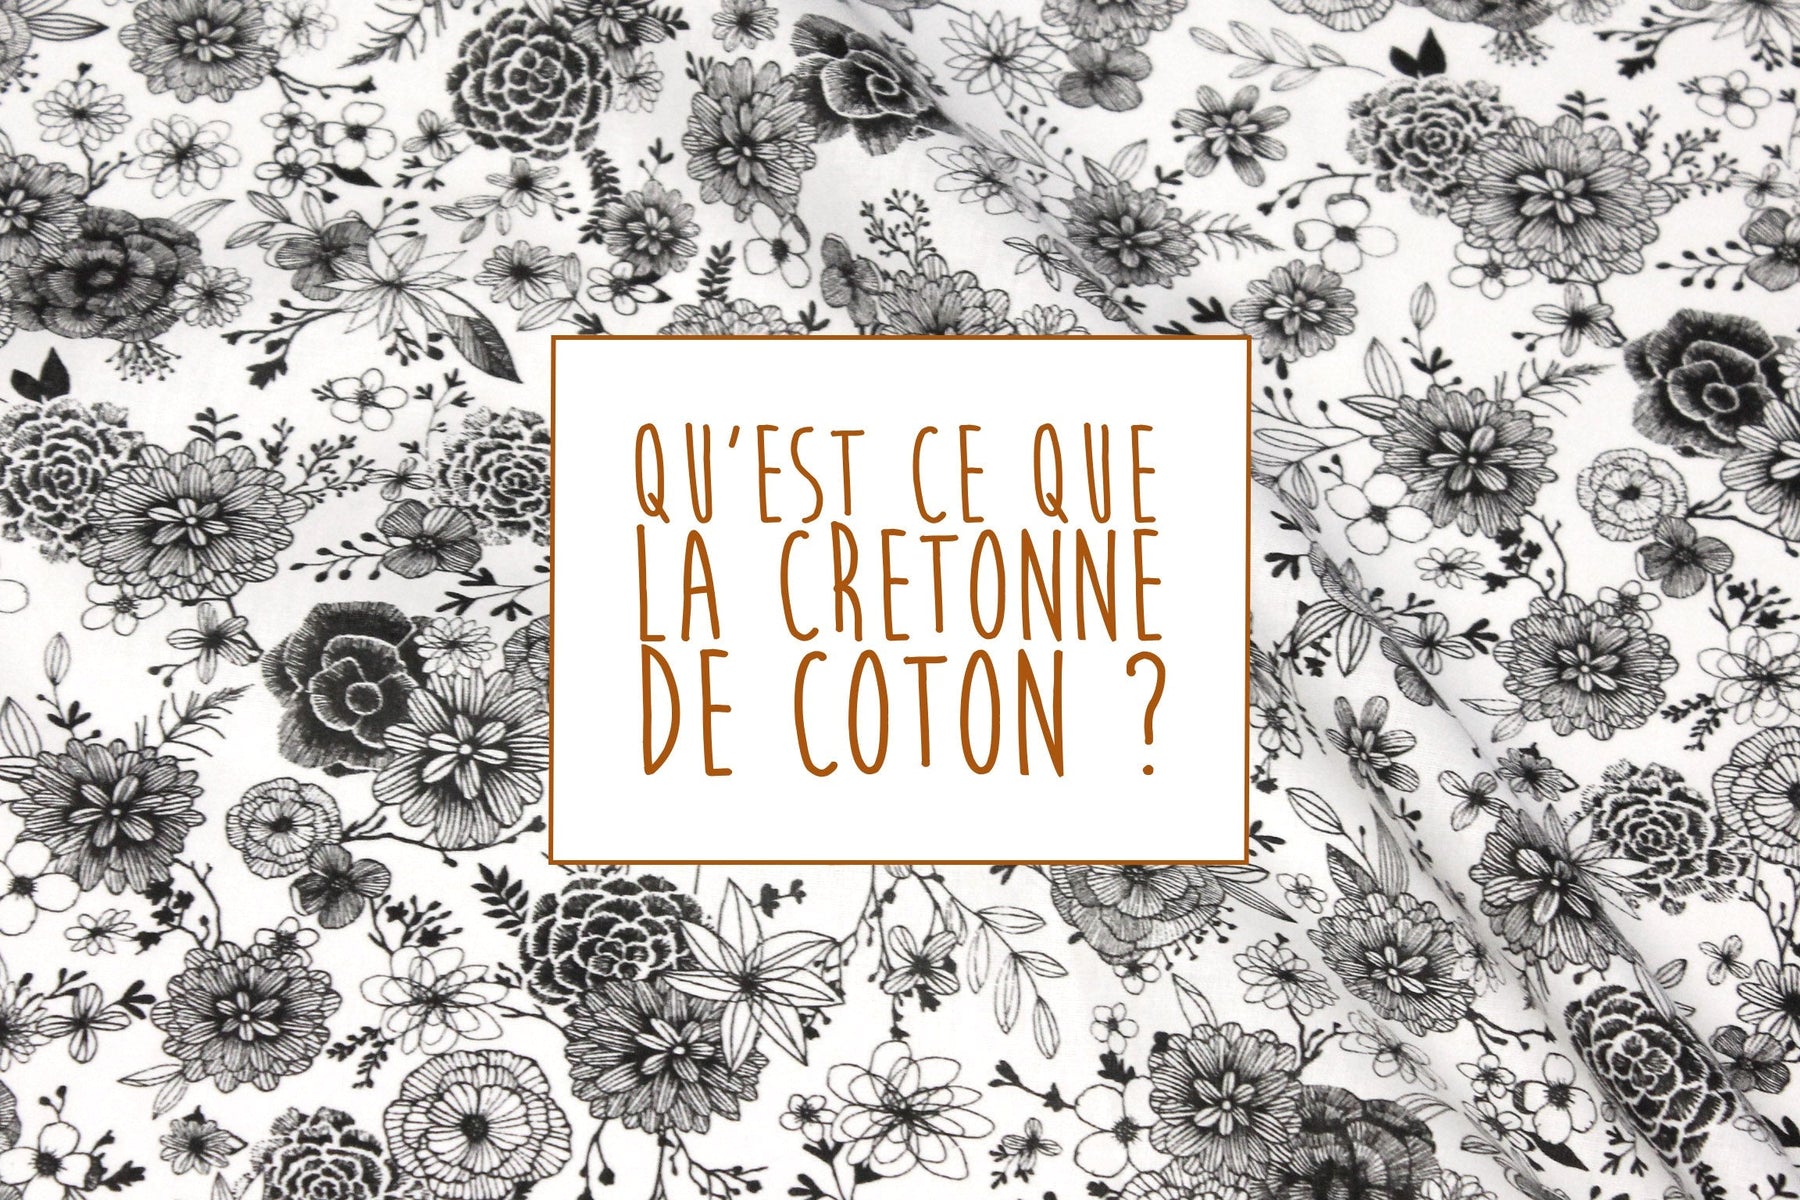 La cretonne de coton, un tissu polyvalent qui va vous étonner !